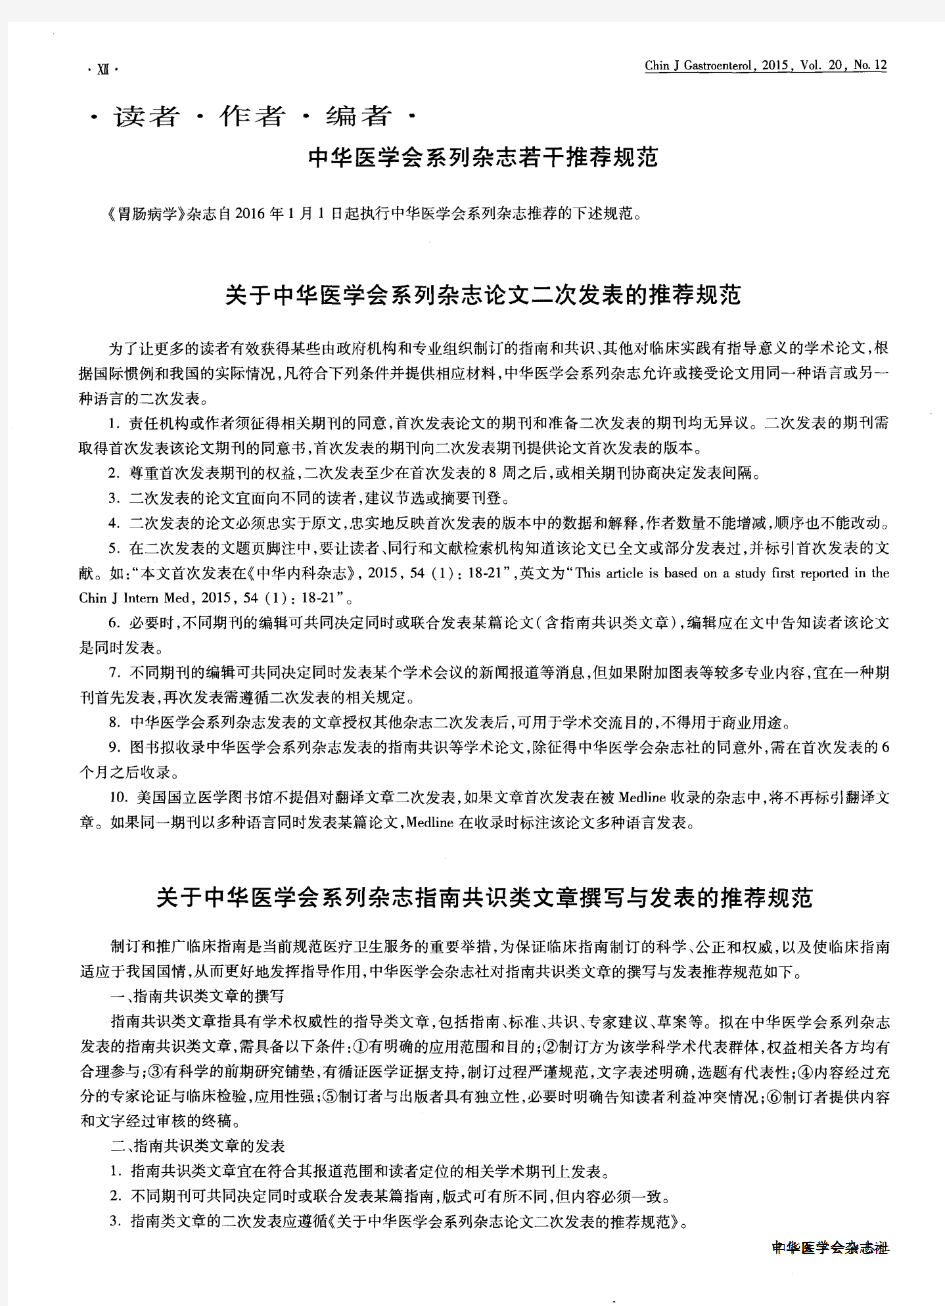 关于中华医学会系列杂志指南共识类文章撰写与发表的推荐规范